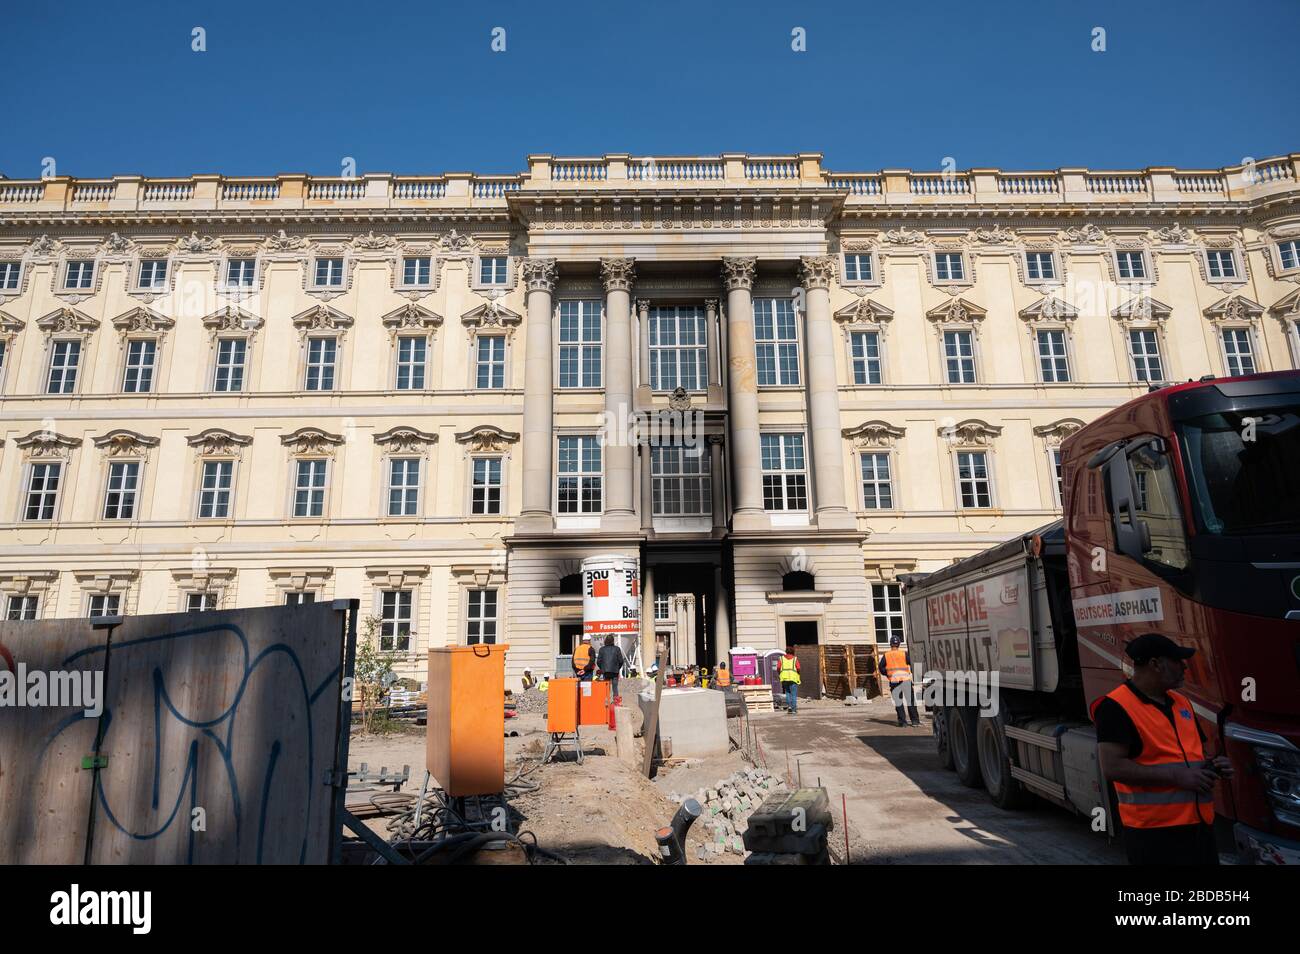 08. April 2020, Berlin: Ein Eingang zum Berliner Humboldt Forum ist beschottet. Bei dem Brand auf der Baustelle wurde eine Person verletzt. Foto: Christophe Gateau / dpa Stockfoto